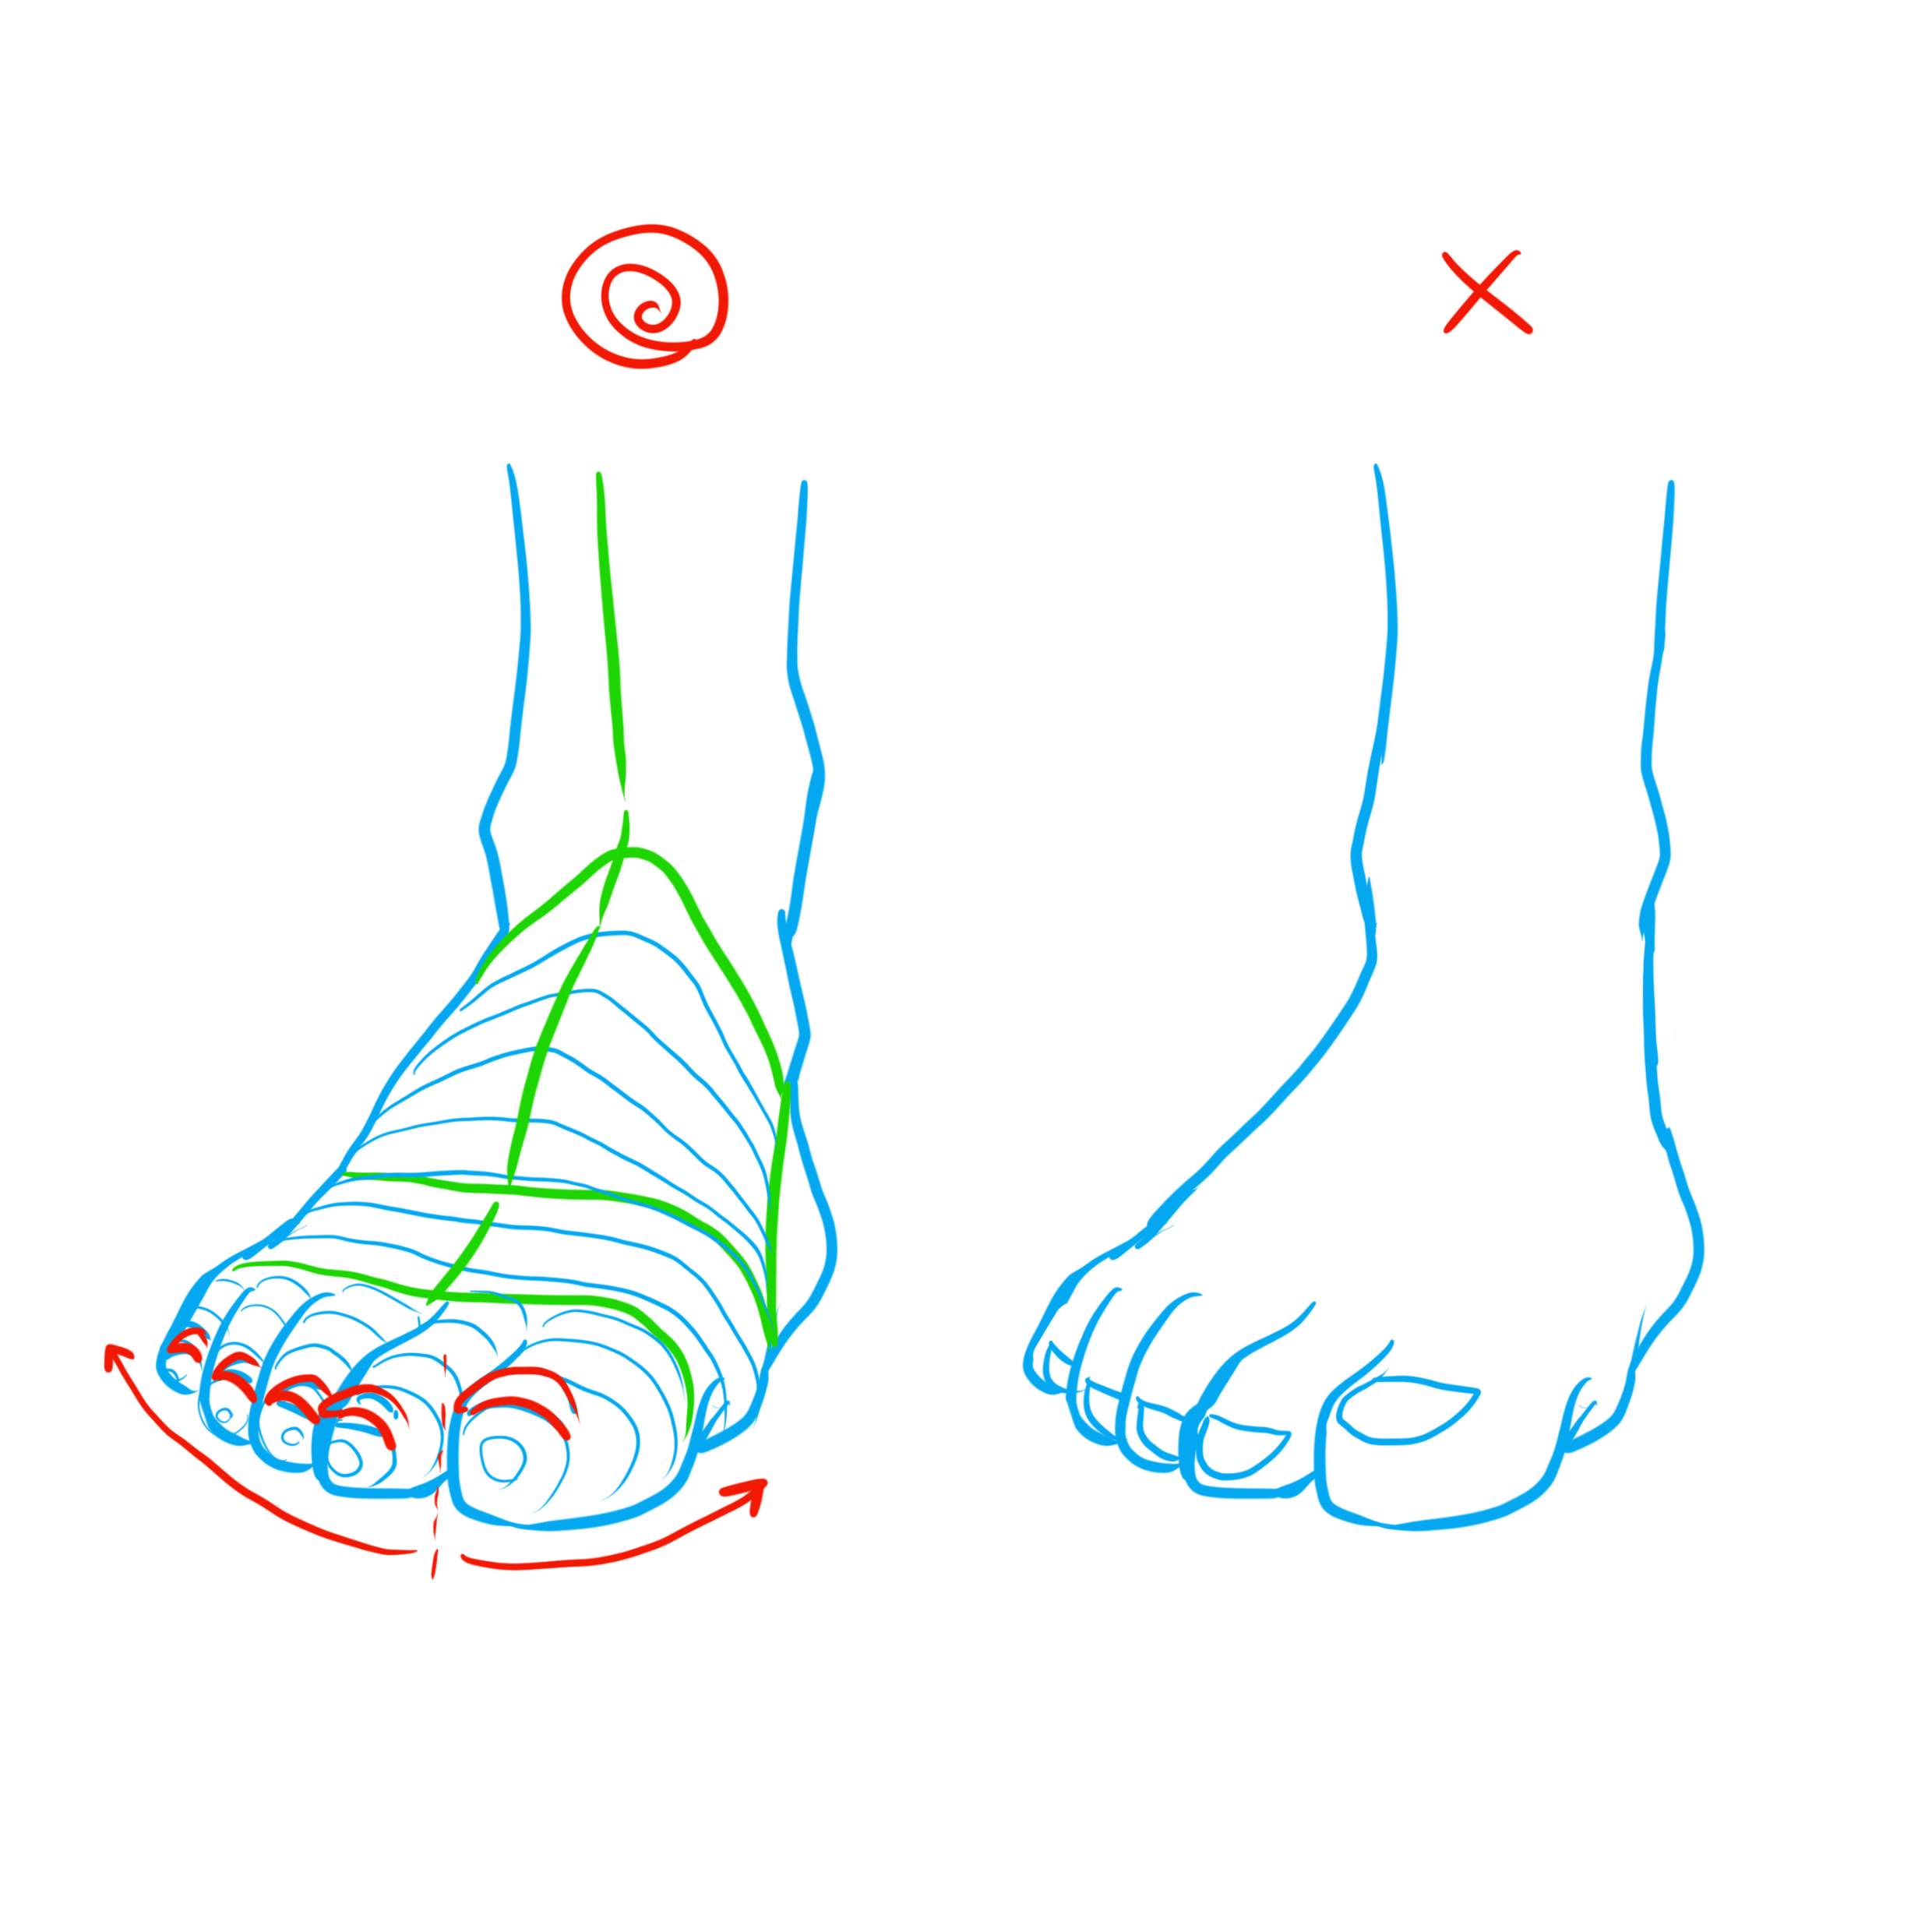 足の描き方 意外と描けない 足の描き方を徹底解説 株式会社esolab